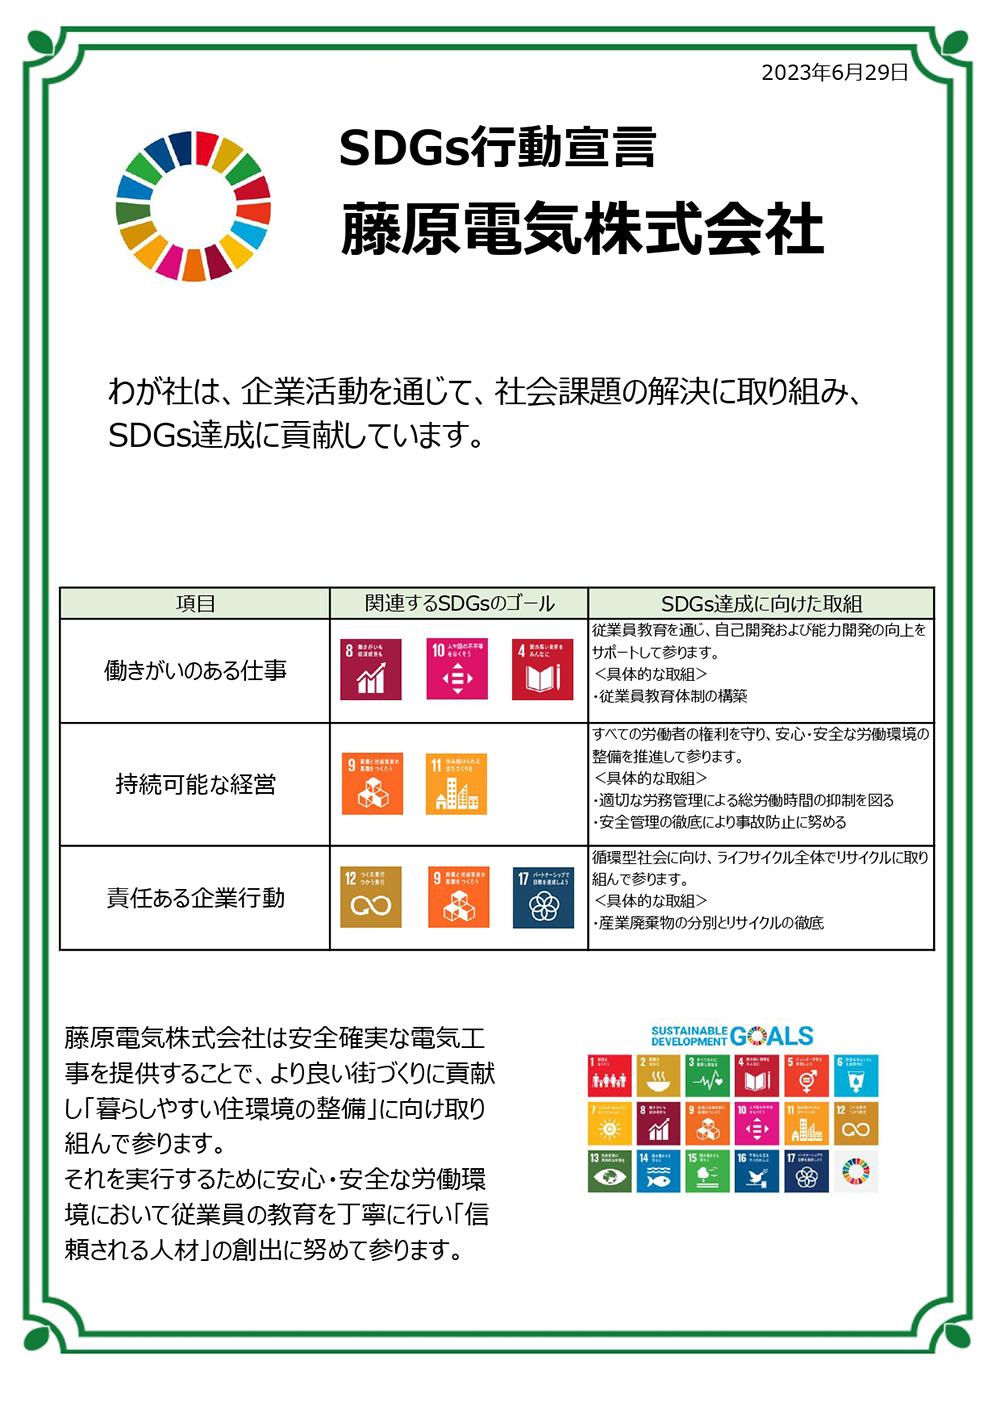 SDG'sに関する取り組み